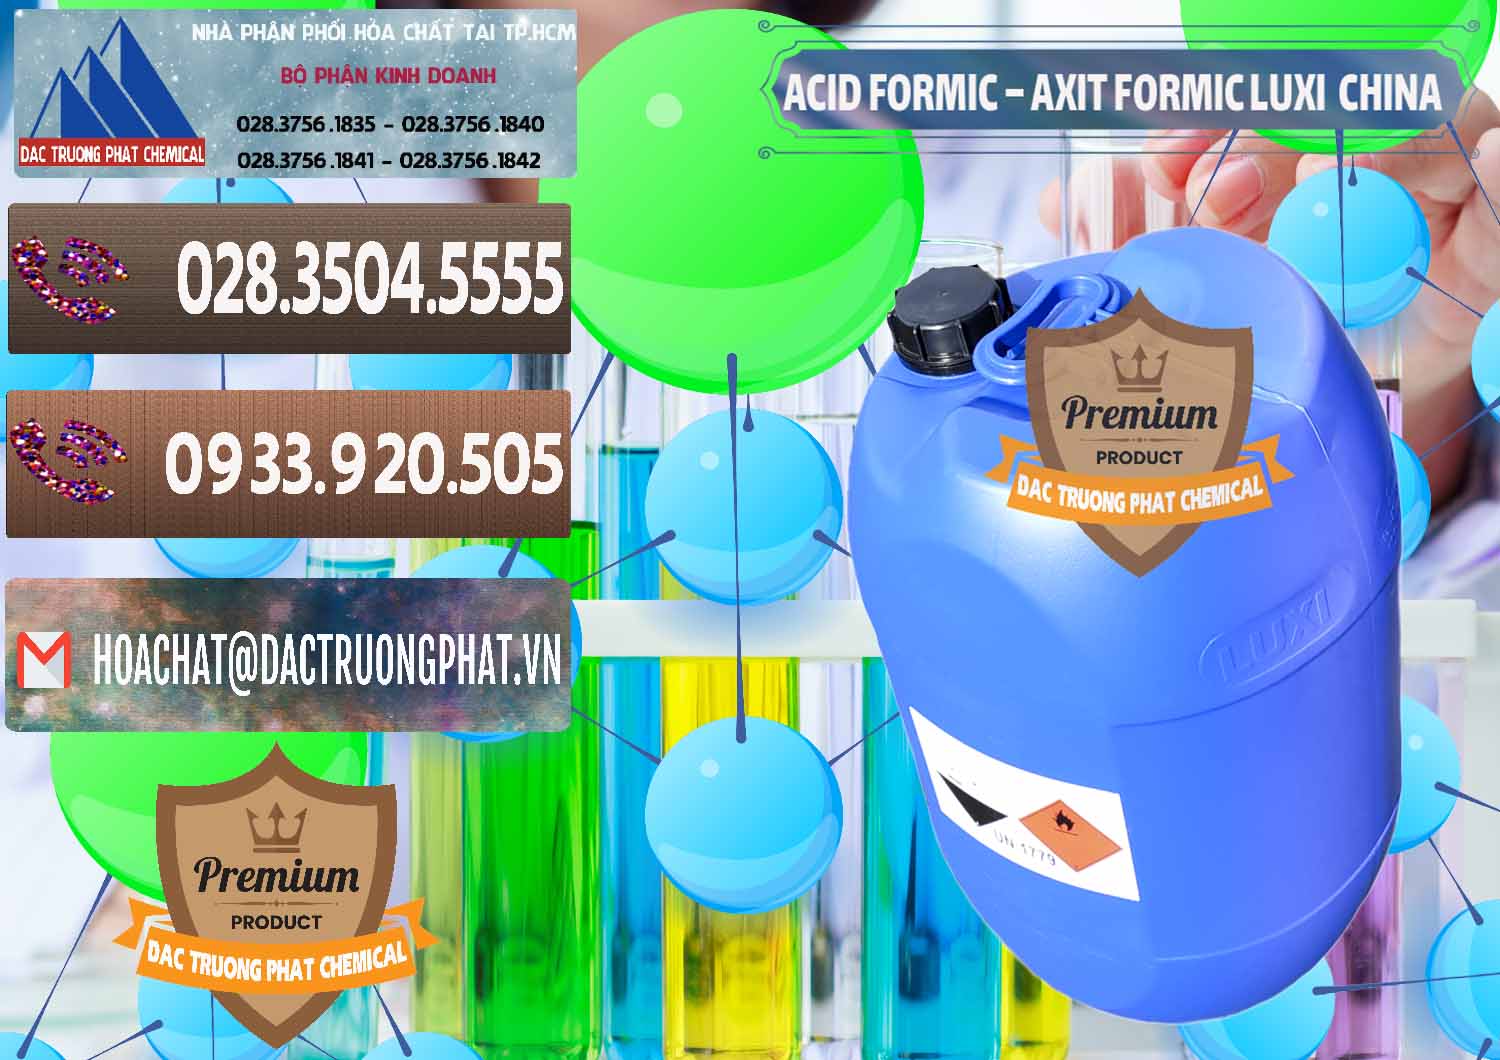 Đơn vị nhập khẩu _ bán Acid Formic - Axit Formic Luxi Trung Quốc China - 0029 - Nơi bán và phân phối hóa chất tại TP.HCM - hoachatviet.net